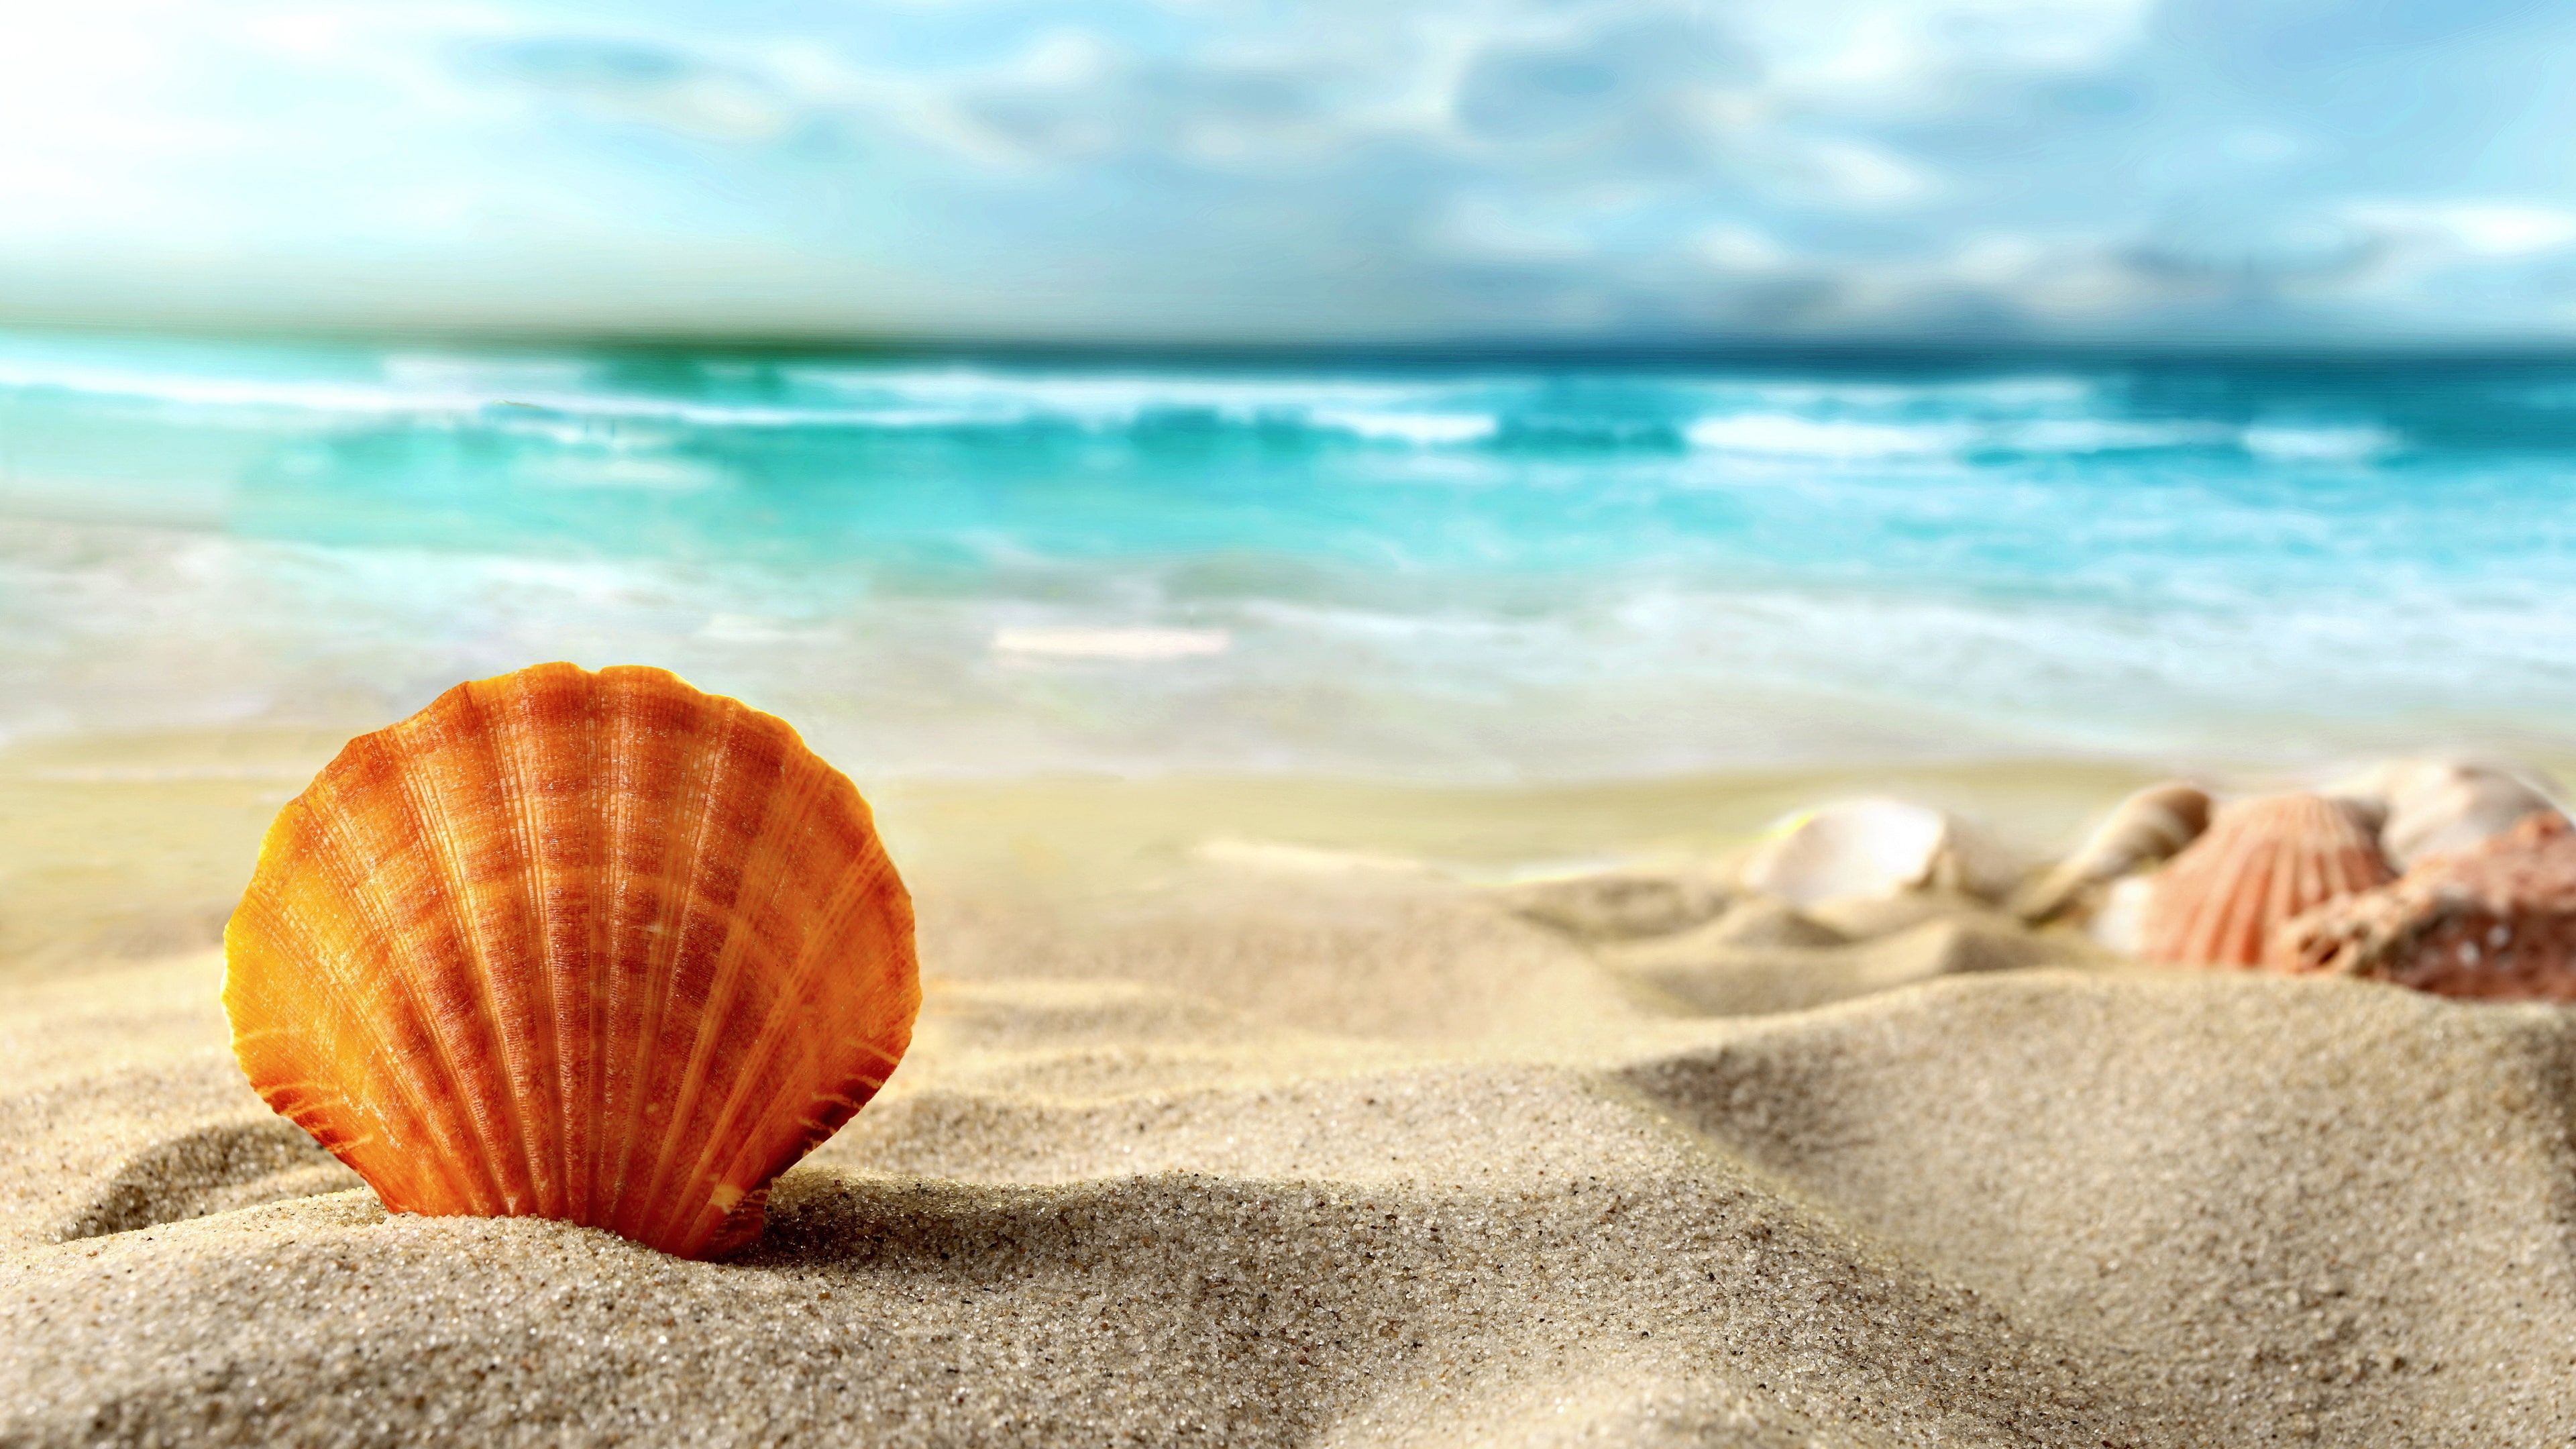 3840x2160 Shell, beach, sands, sea, brown sea shell #Shell #Beach #Sands #Sea #4K # wallpaper #hdwallpaper #desktop | Fondo de mar, Pantalla de computadora, Bandera de cuba